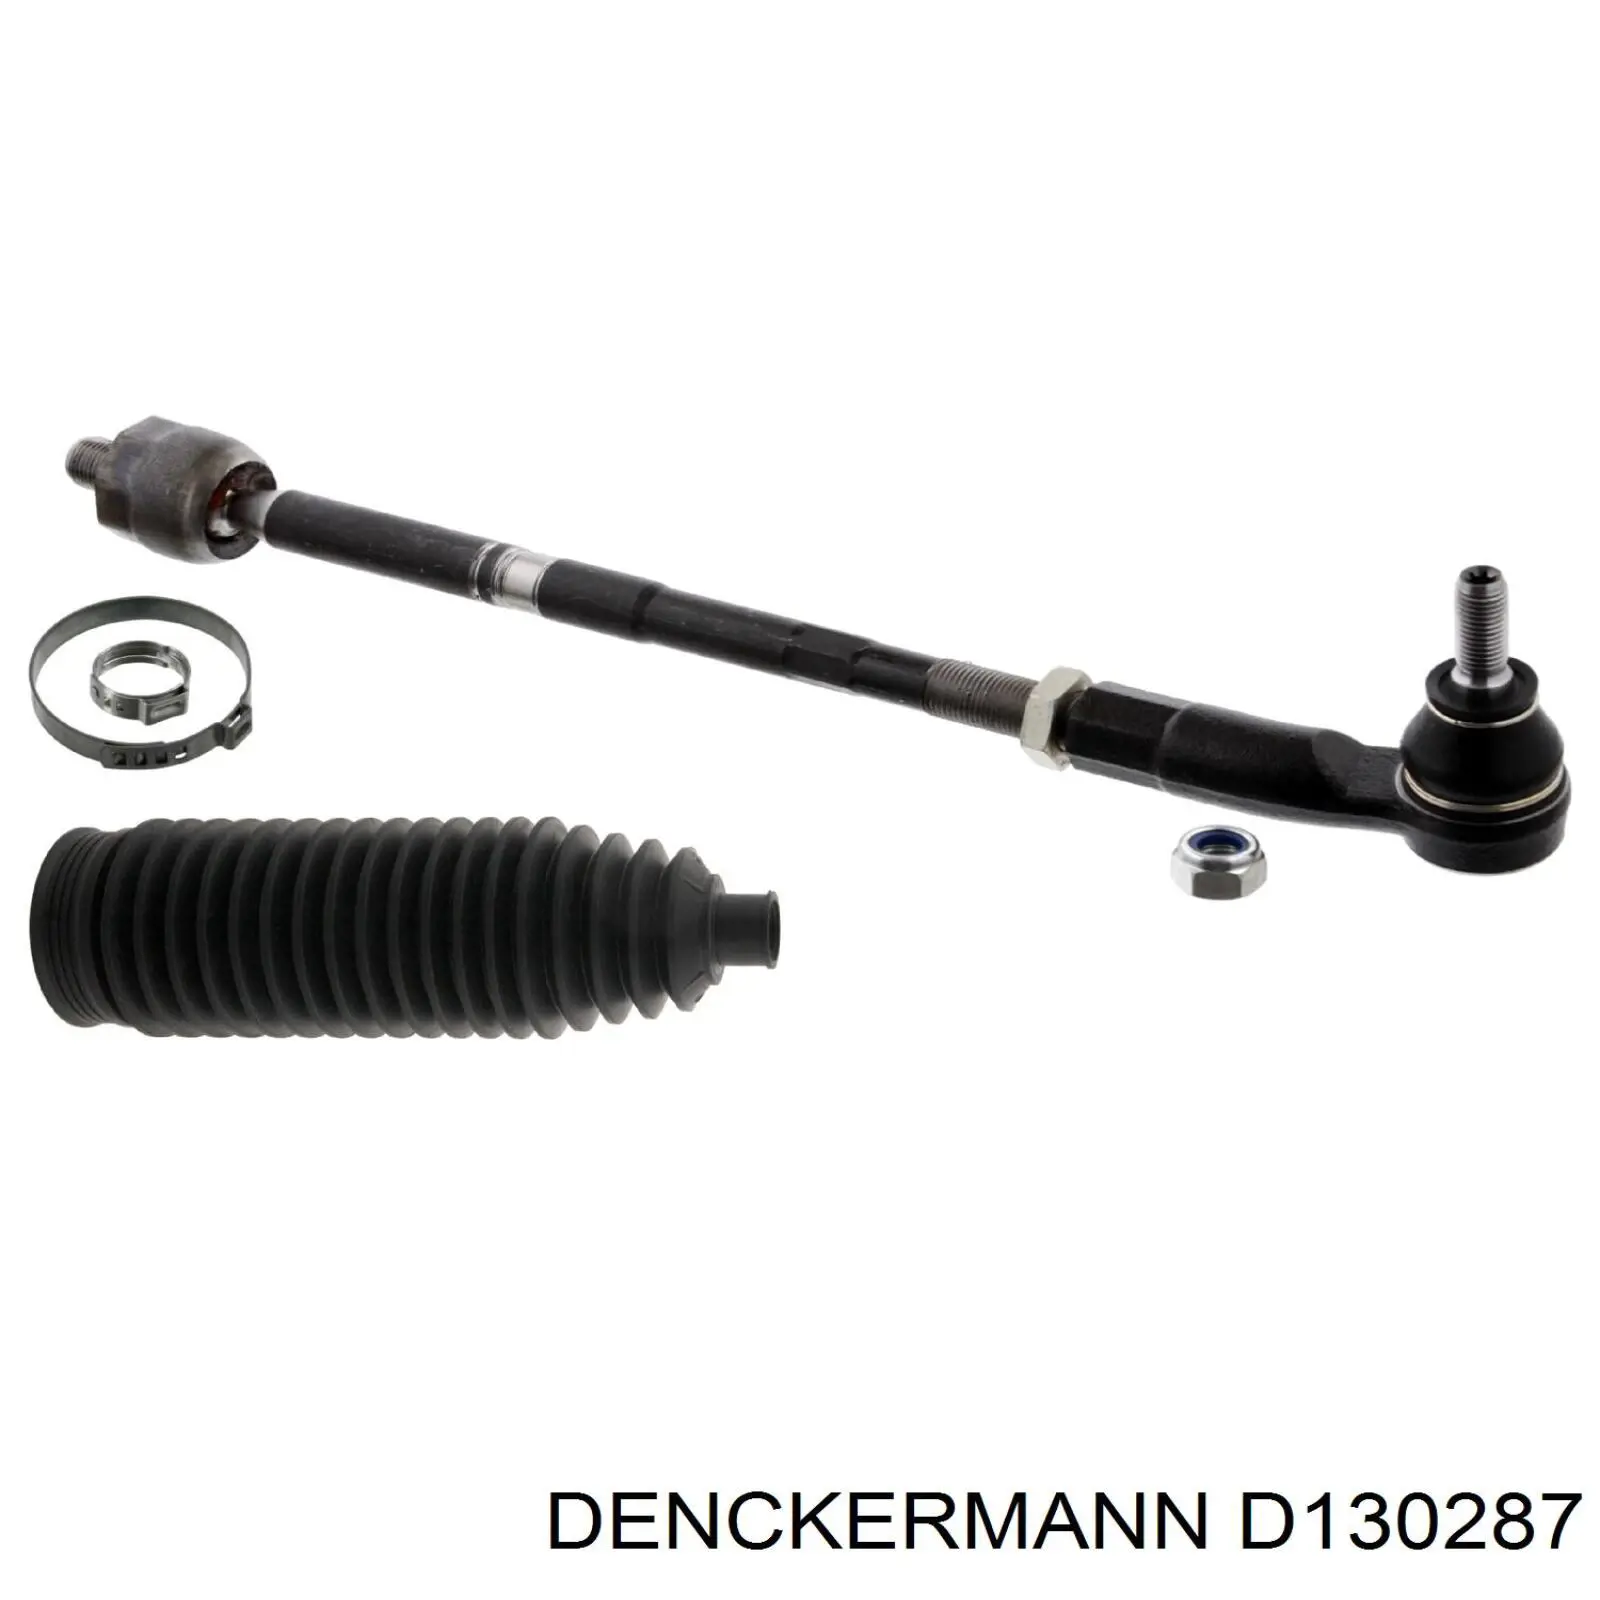 D130287 Denckermann rótula barra de acoplamiento exterior